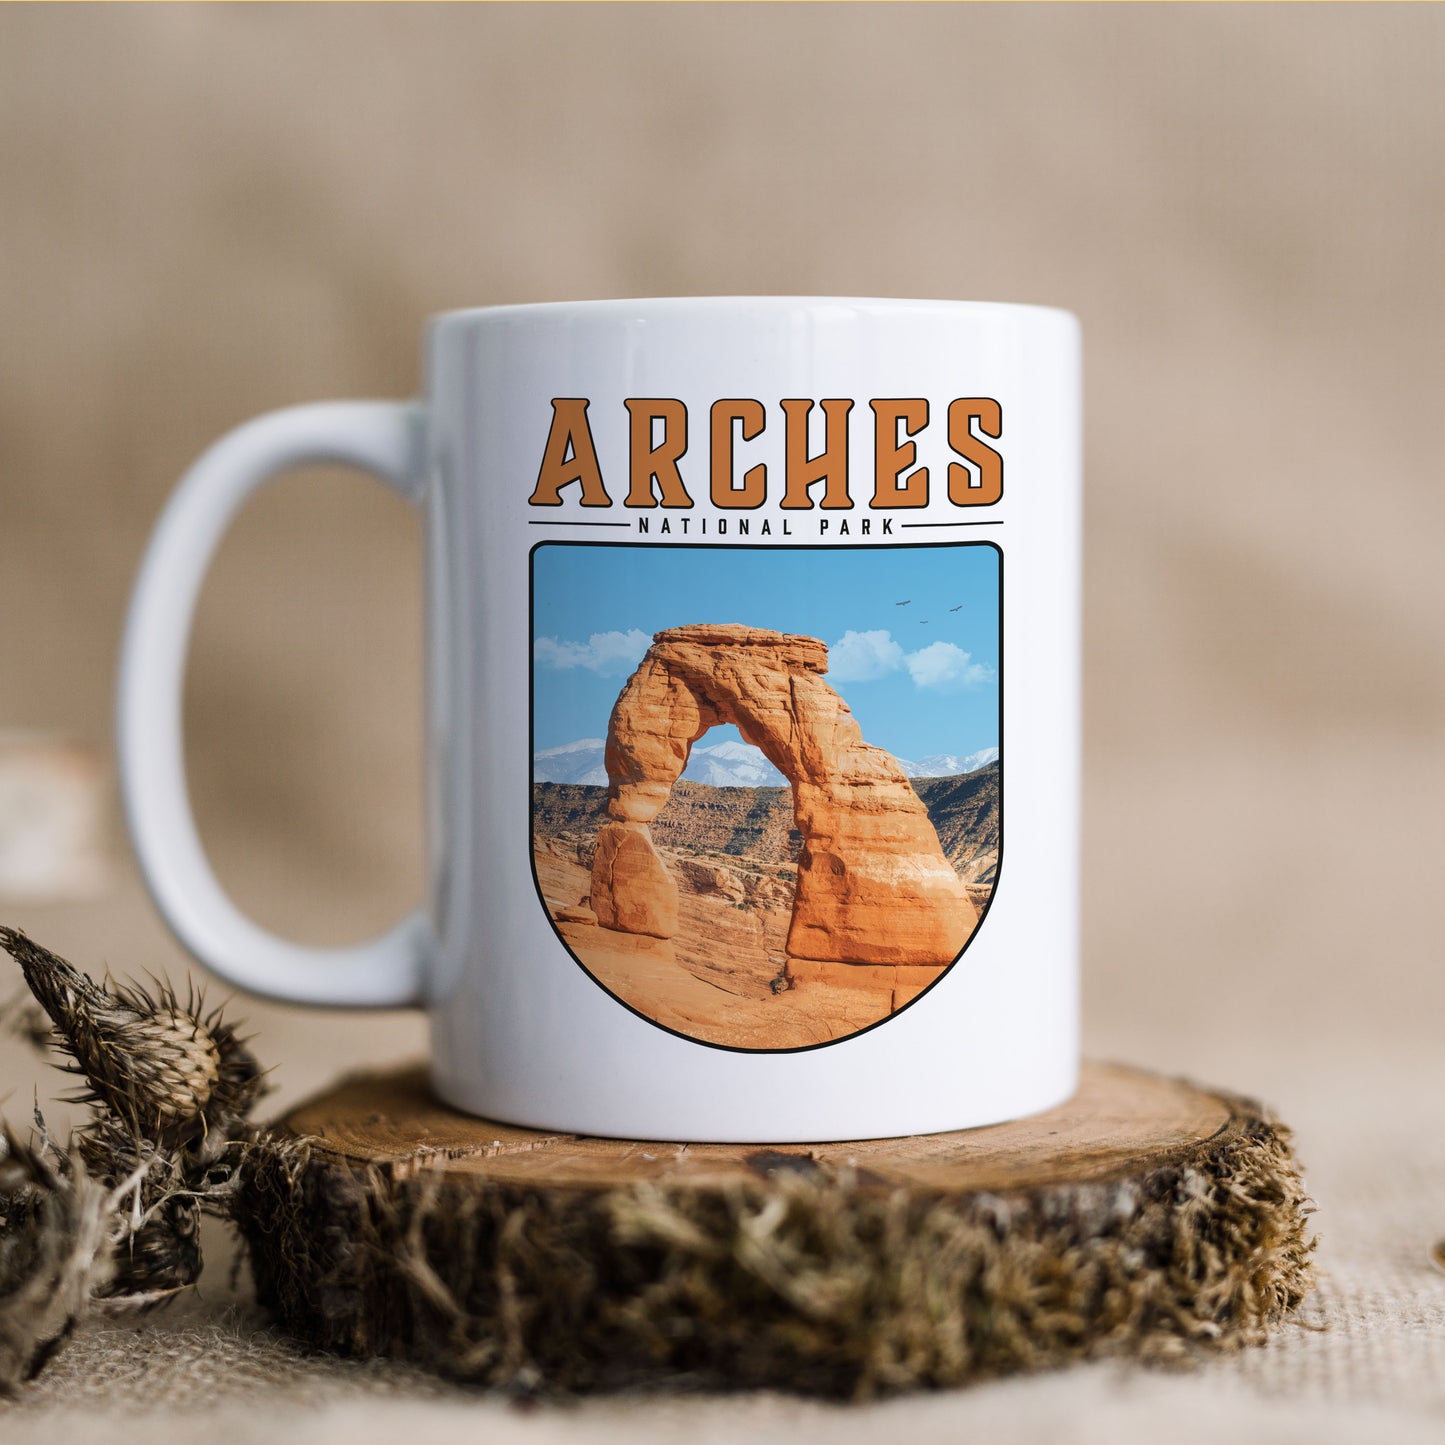 Arches National Park - Ceramic Mug